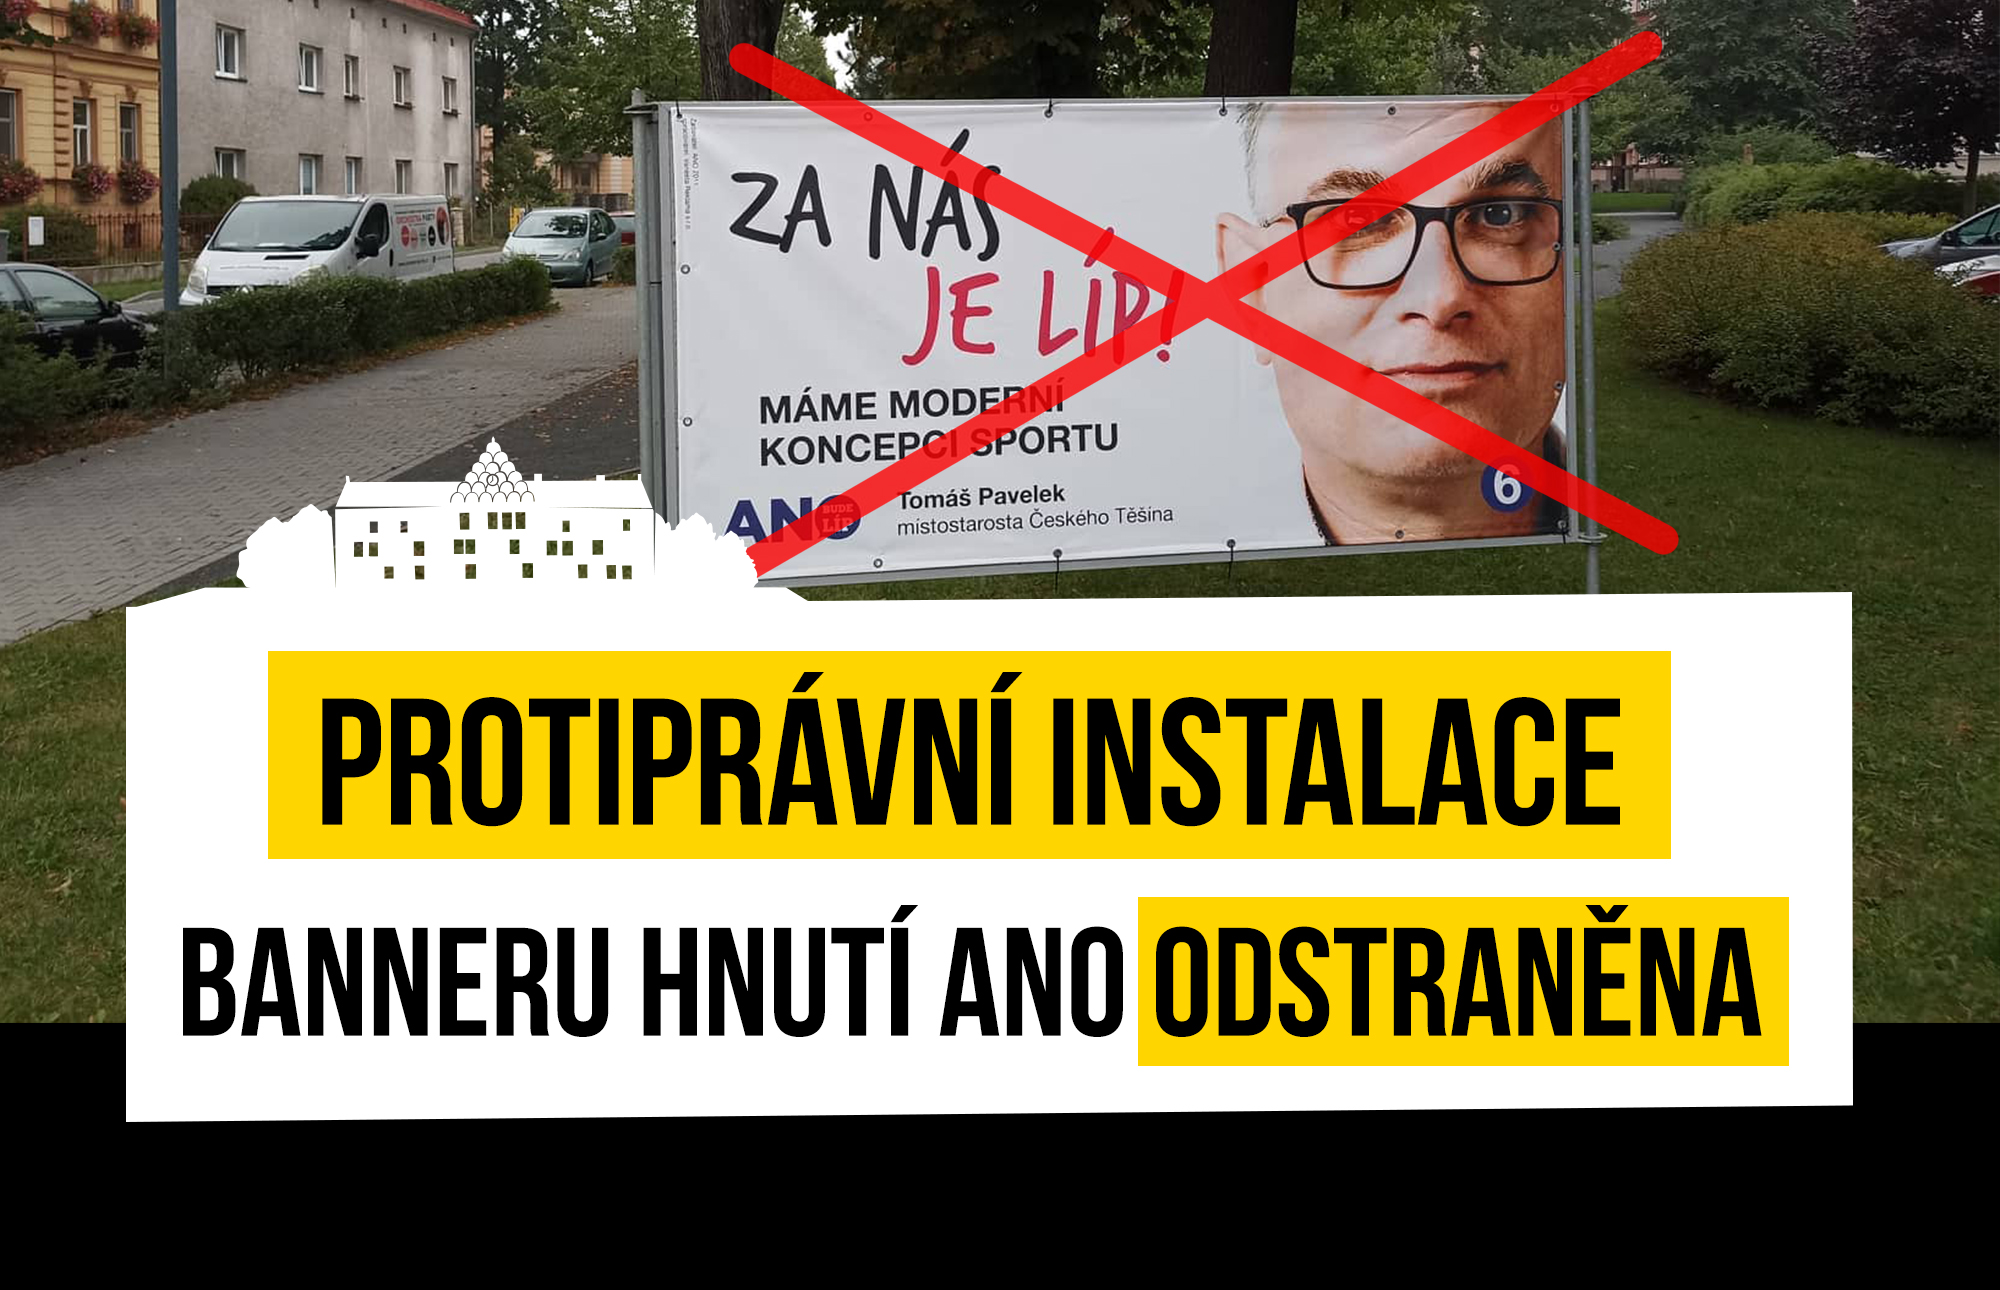 Přečtete si více ze článku Protiprávní instalace banneru ANO odstraněna!